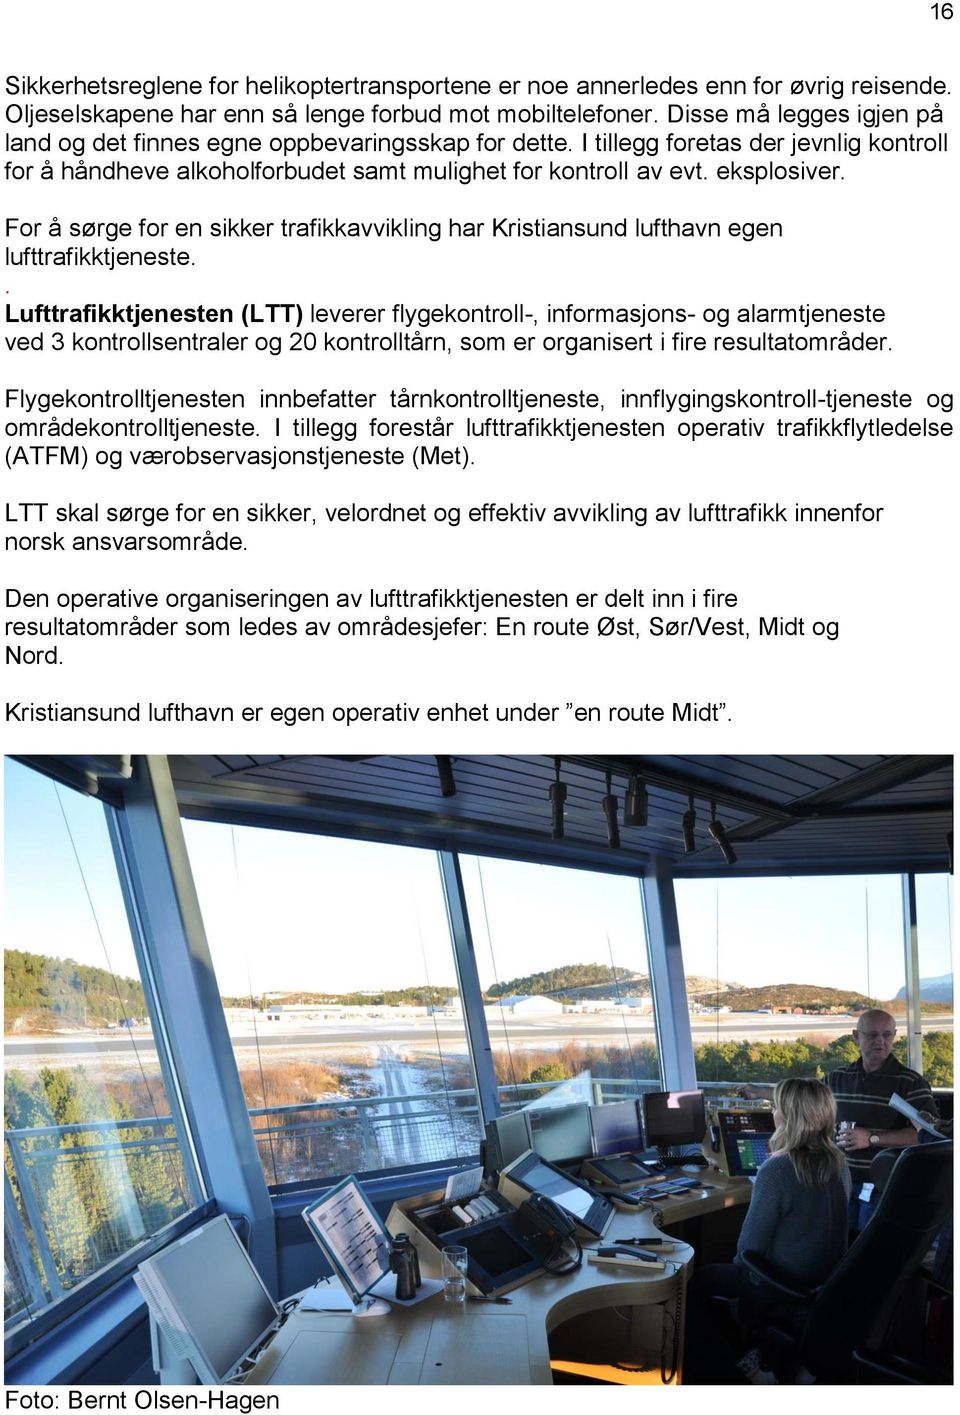 For å sørge for en sikker trafikkavvikling har Kristiansund lufthavn egen lufttrafikktjeneste.